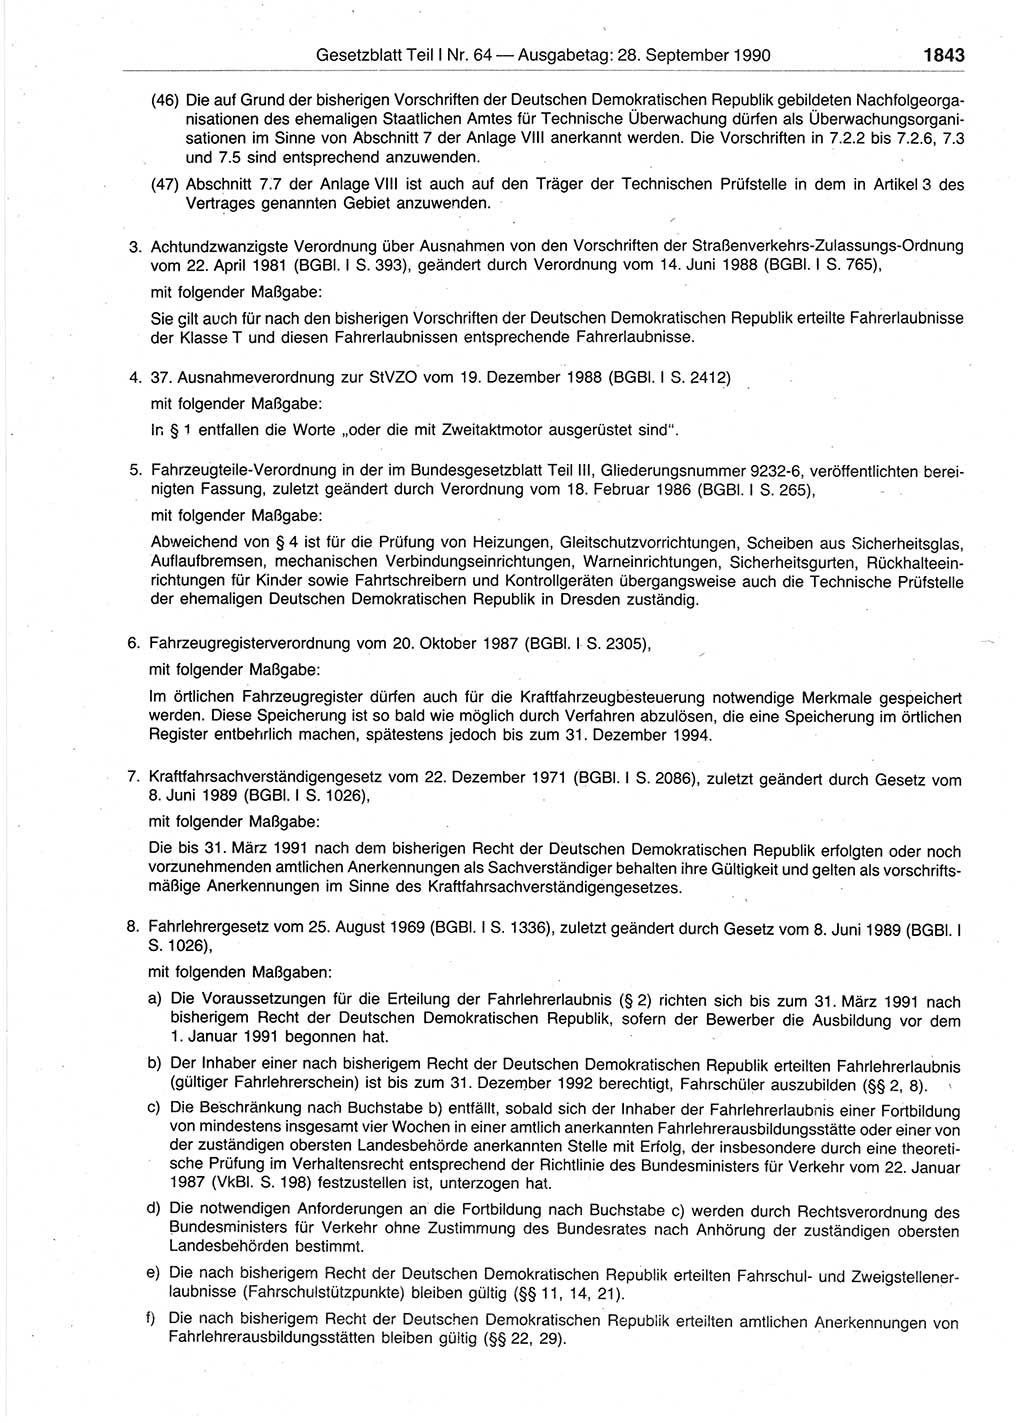 Gesetzblatt (GBl.) der Deutschen Demokratischen Republik (DDR) Teil Ⅰ 1990, Seite 1843 (GBl. DDR Ⅰ 1990, S. 1843)